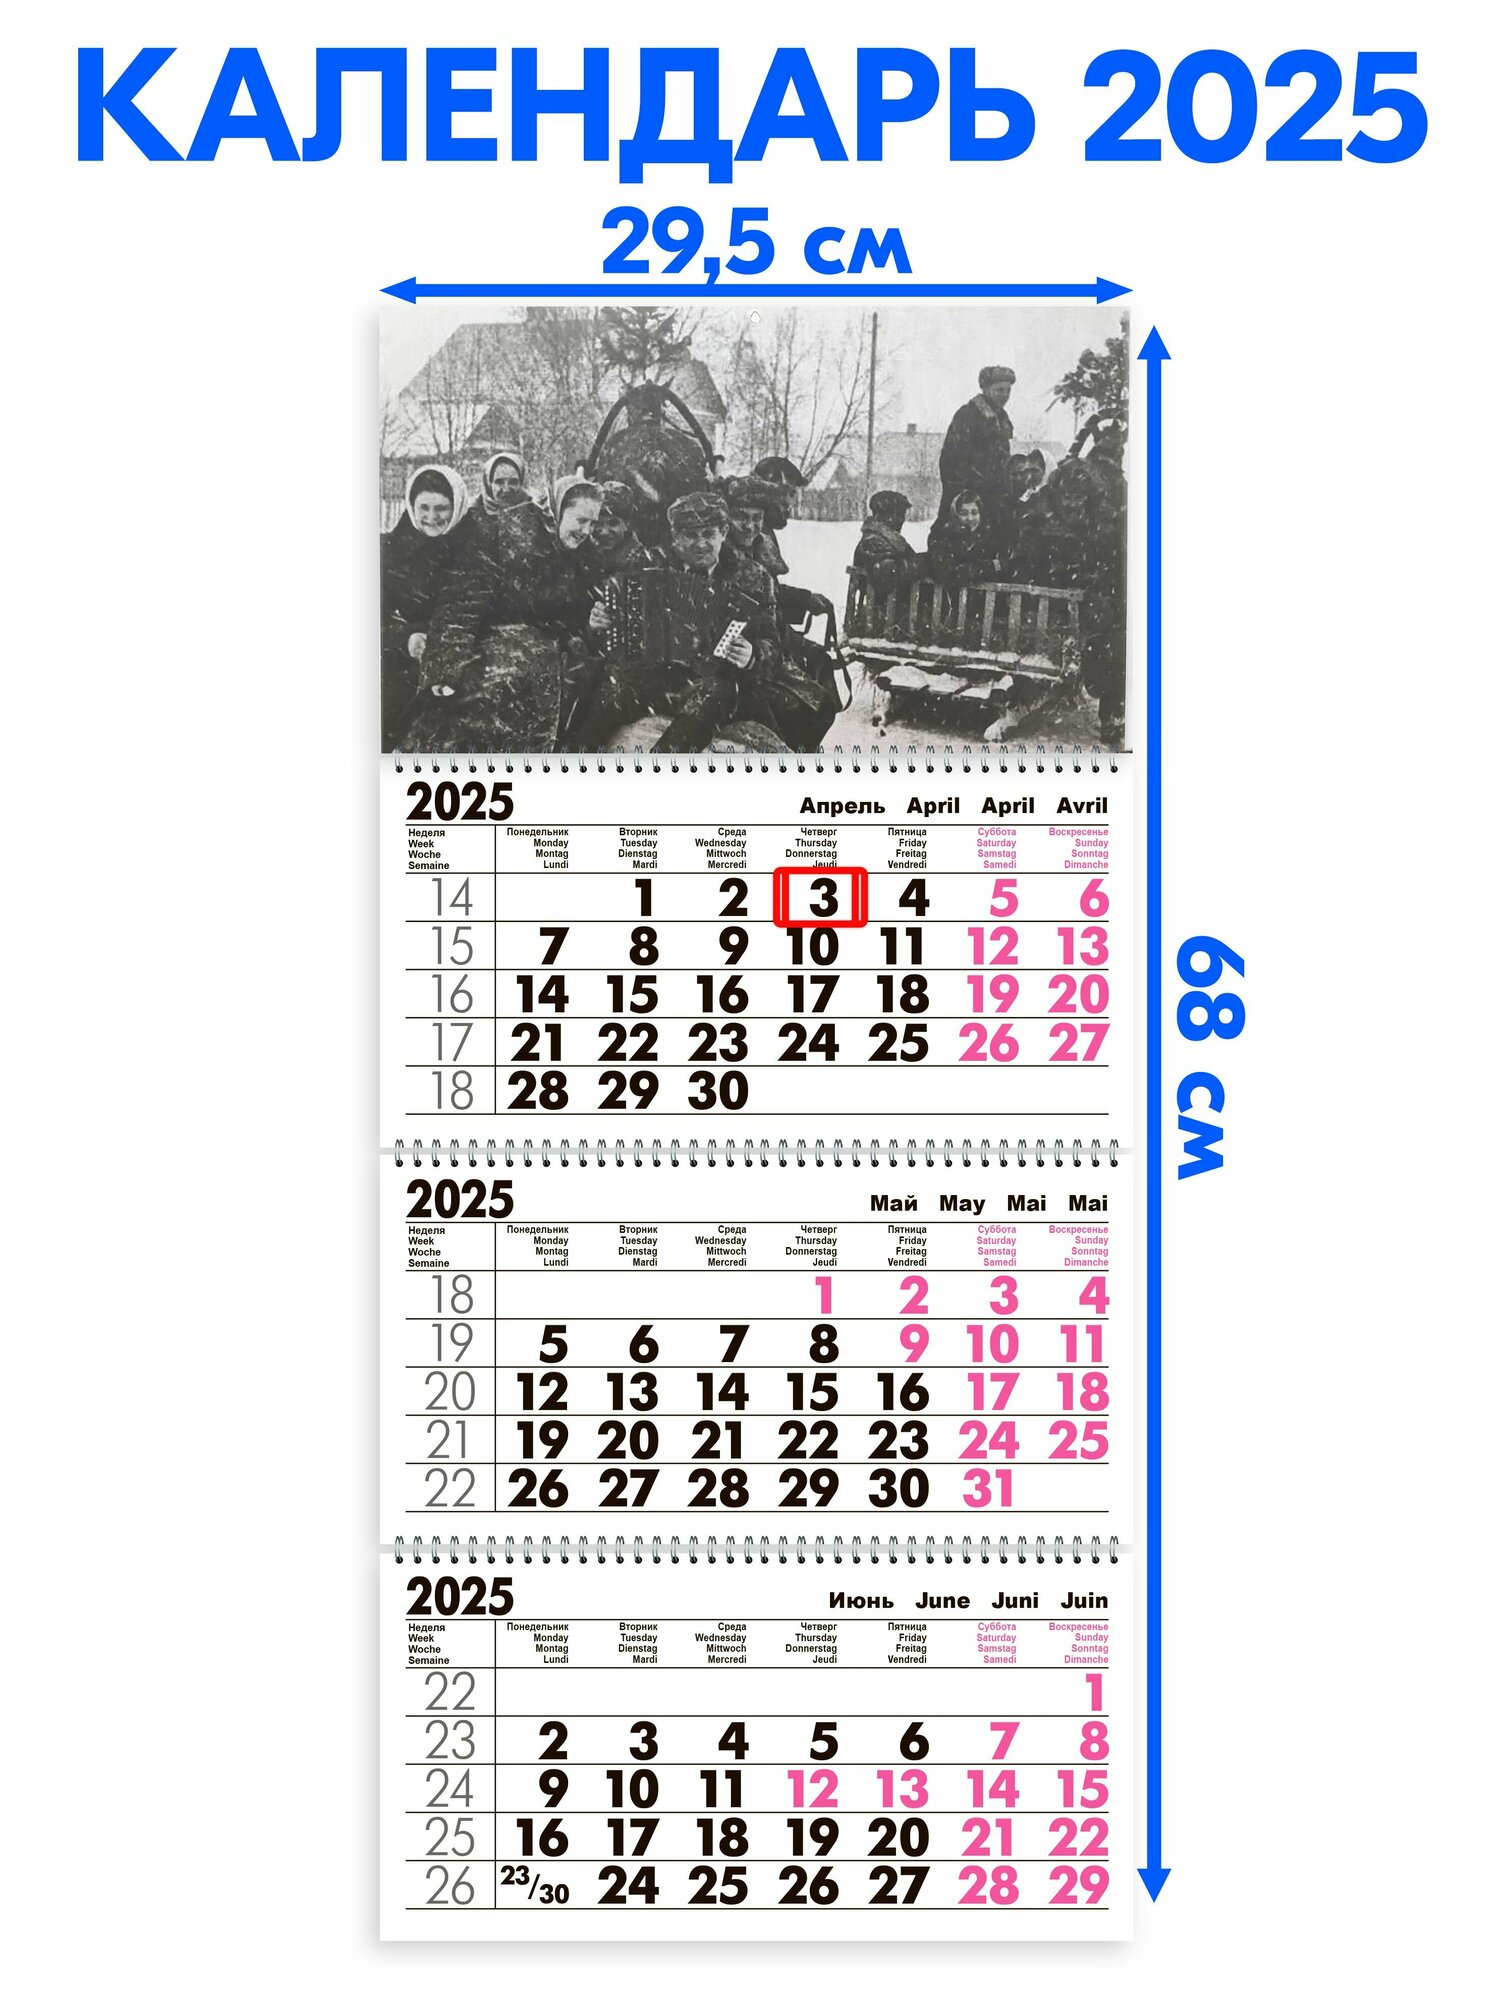 Календарь 2025 настенный трехблочный Ретро Длина календаря в развёрнутом виде - 68 см, ширина - 29,5 см. с ндс